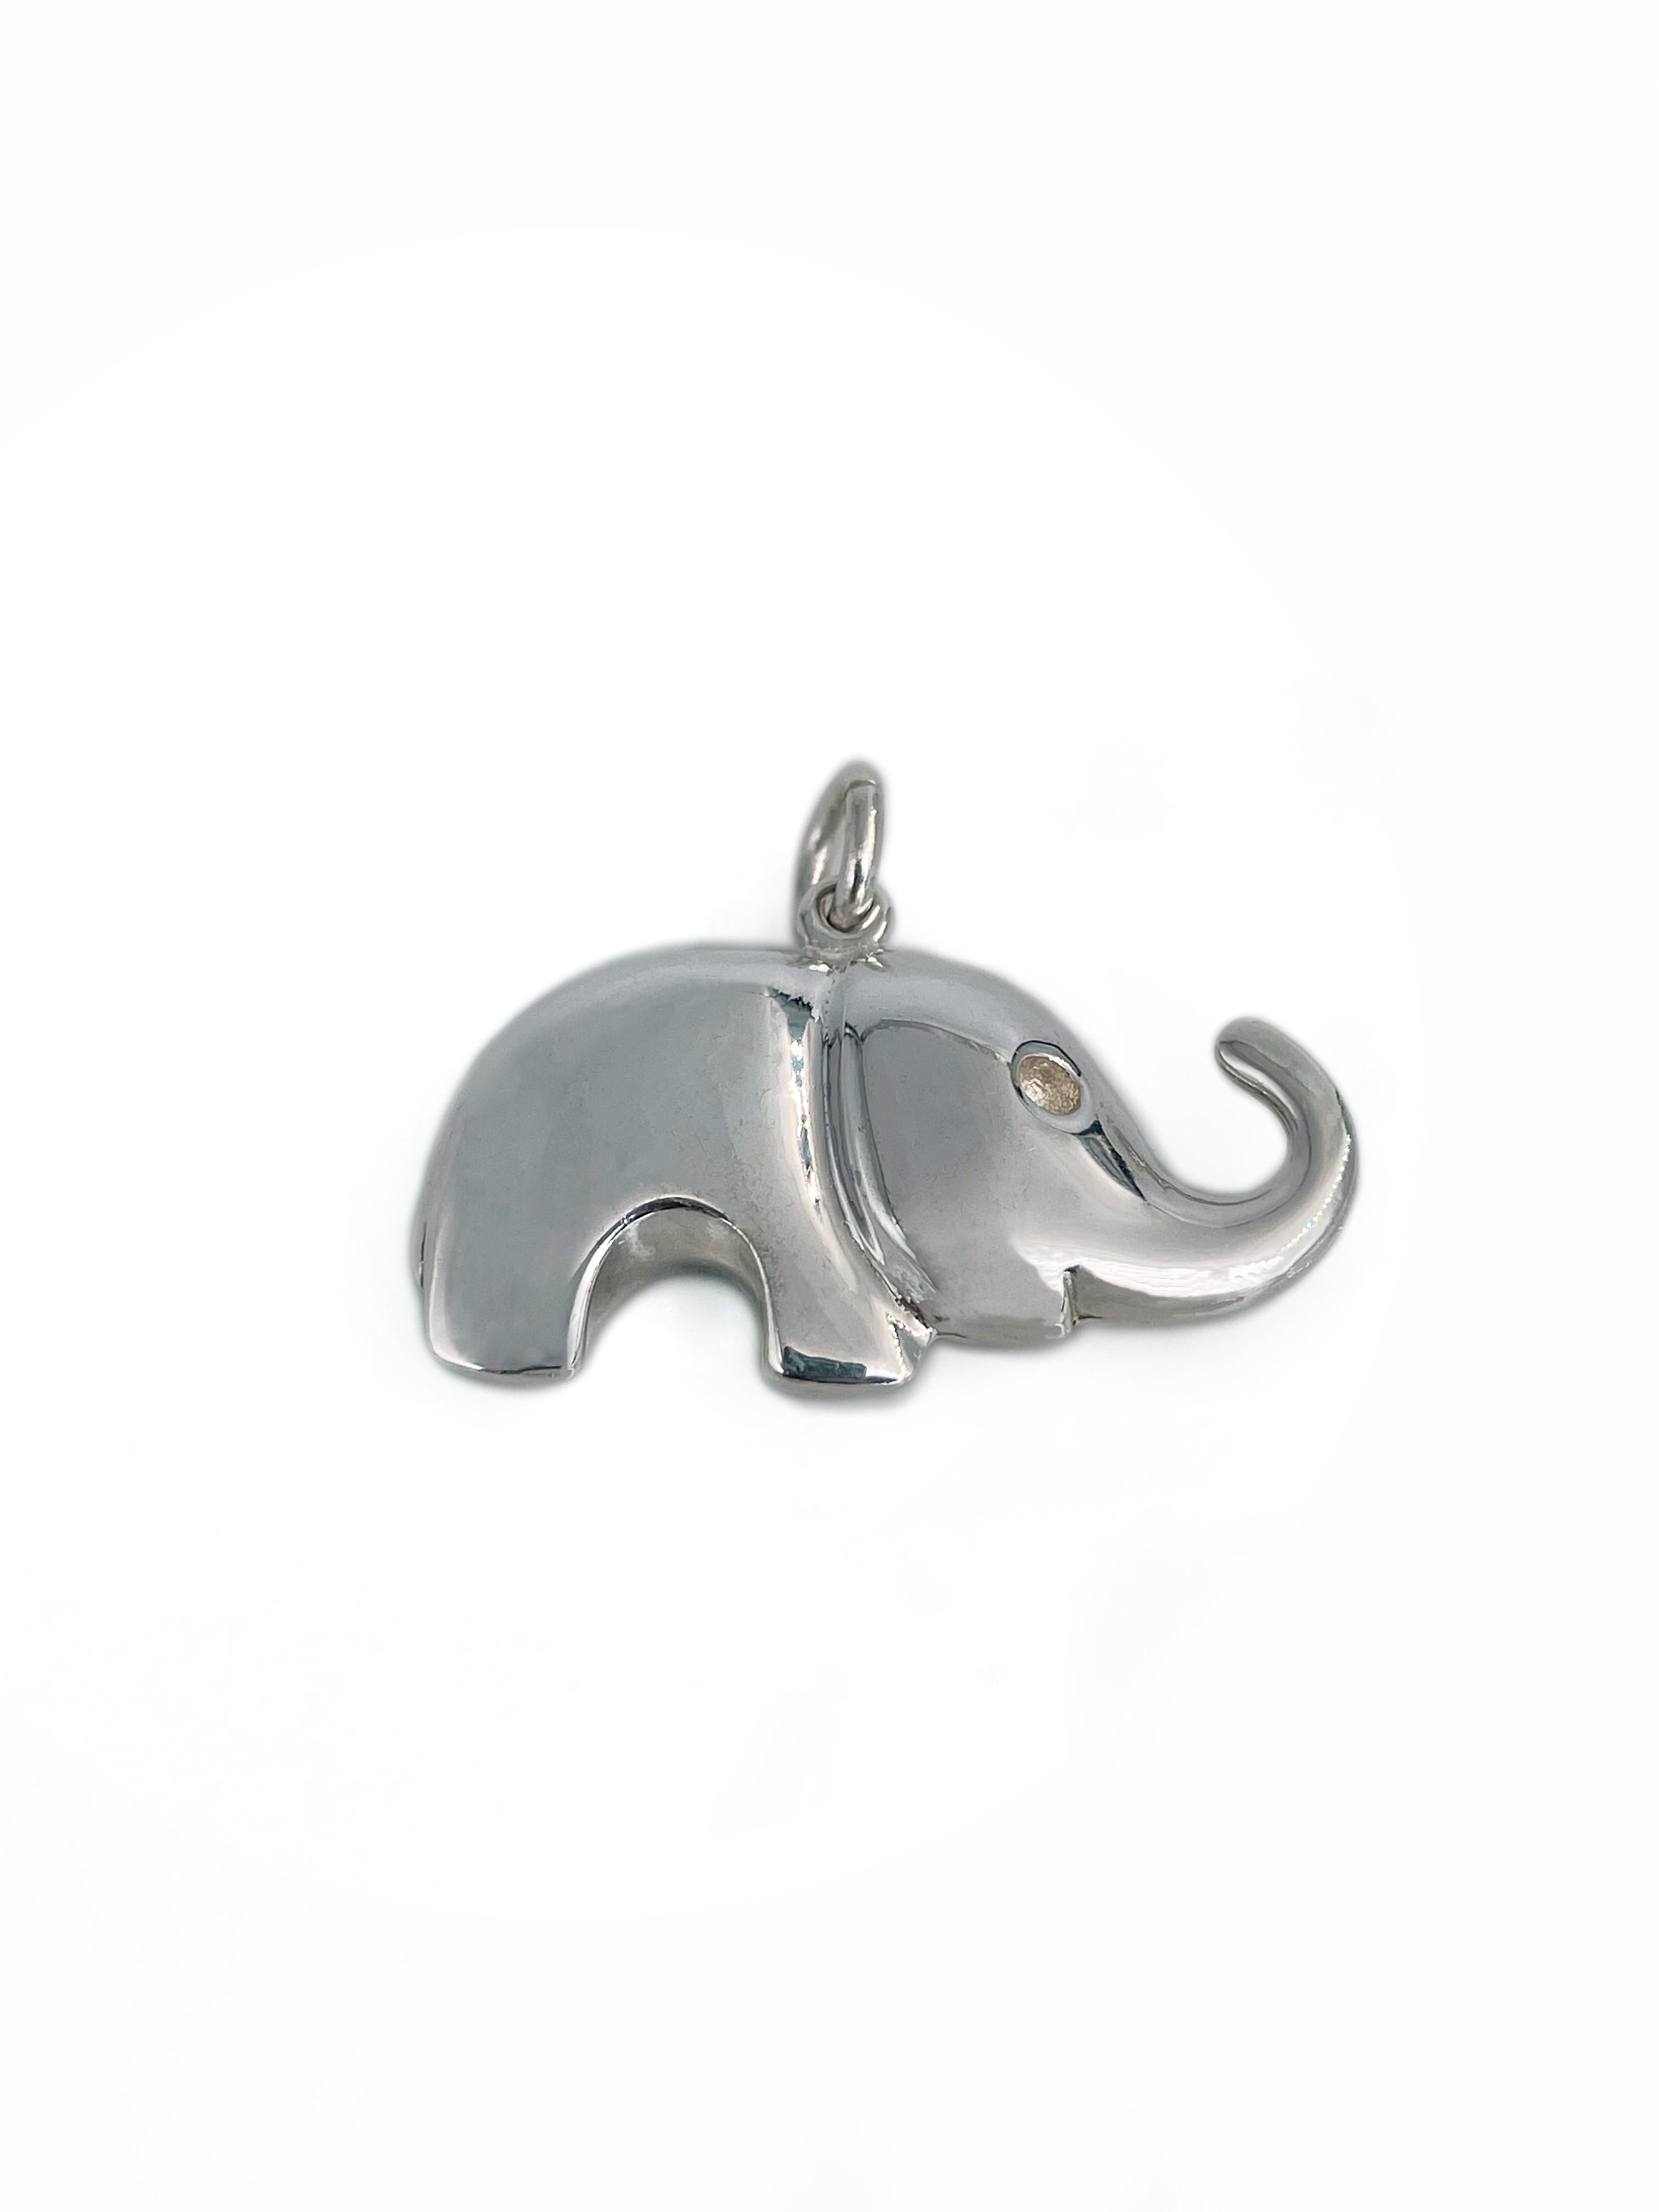 Voici un charmant pendentif en forme d'éléphant conçu par Tiffany & Co. dans les années 1990. Il est réalisé en 925  Poinçon d'argent. 

Signé : Tiffany & Co. 925

Poids : 16,81 g 
Taille : 2.8x3.5cm

---

Si vous avez des questions, n'hésitez pas à